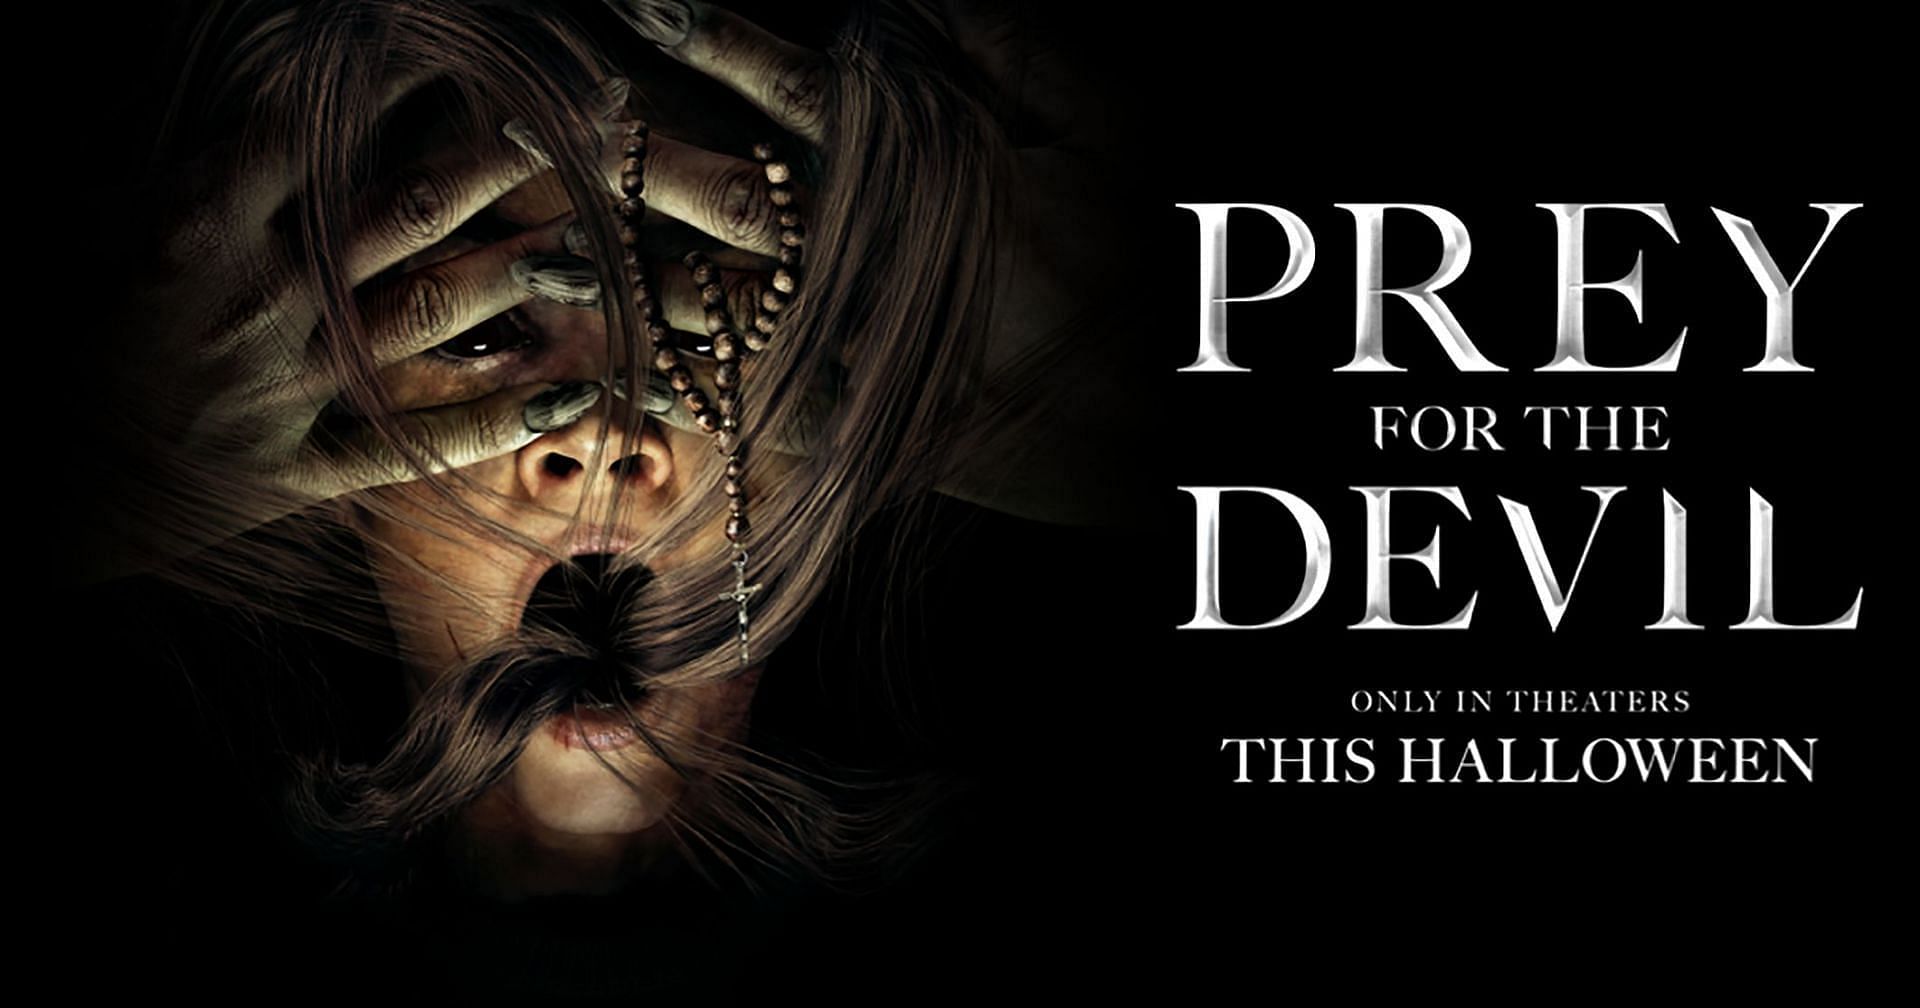 Prey for the Devil (Image via Lionsgate)